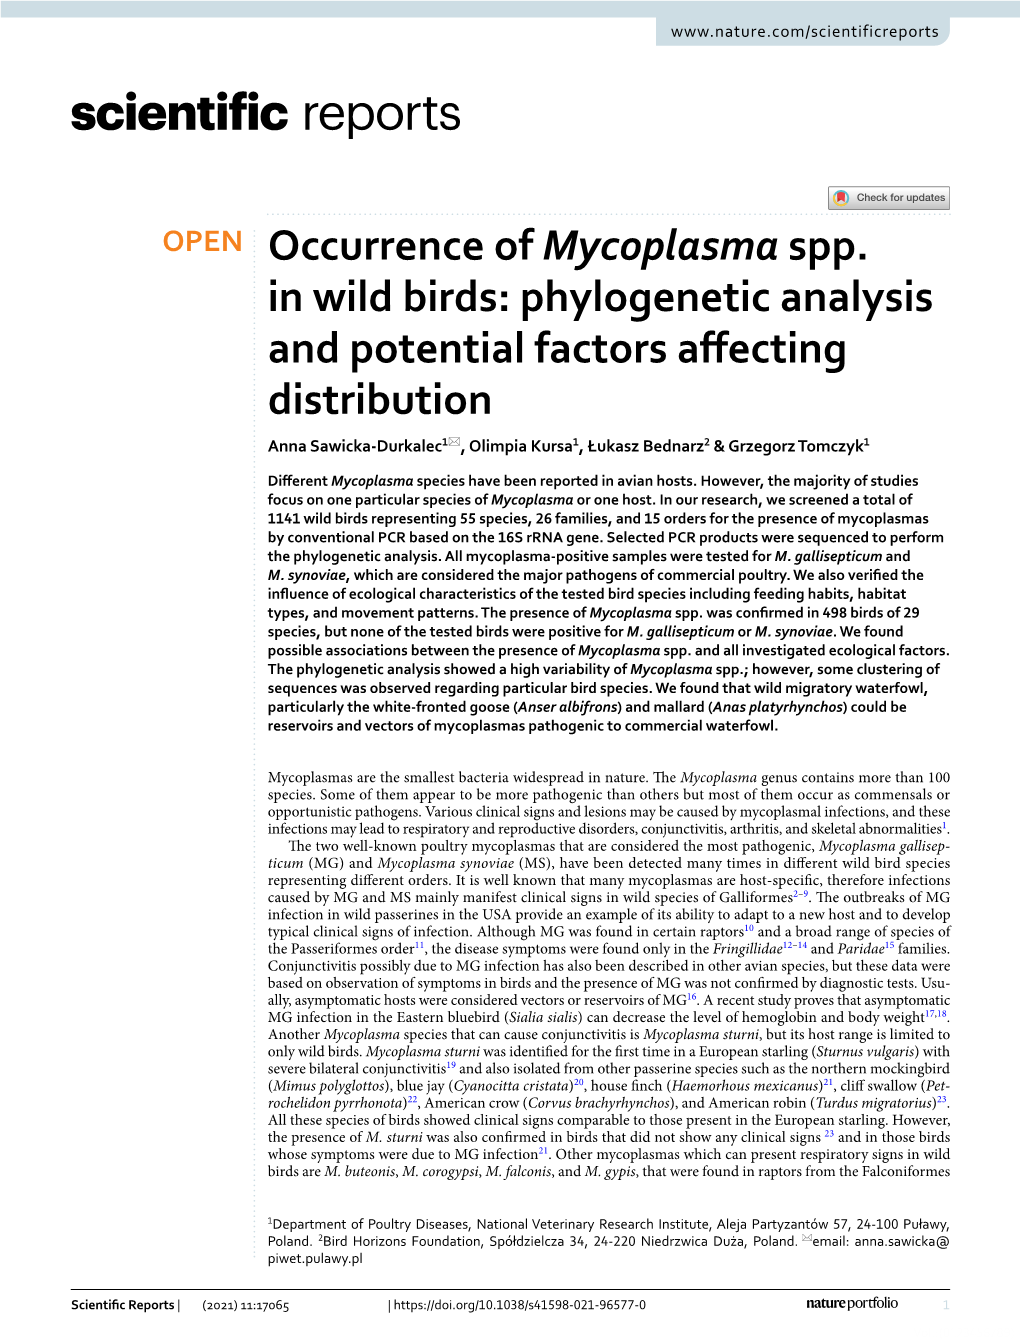 Occurrence of Mycoplasma Spp. in Wild Birds